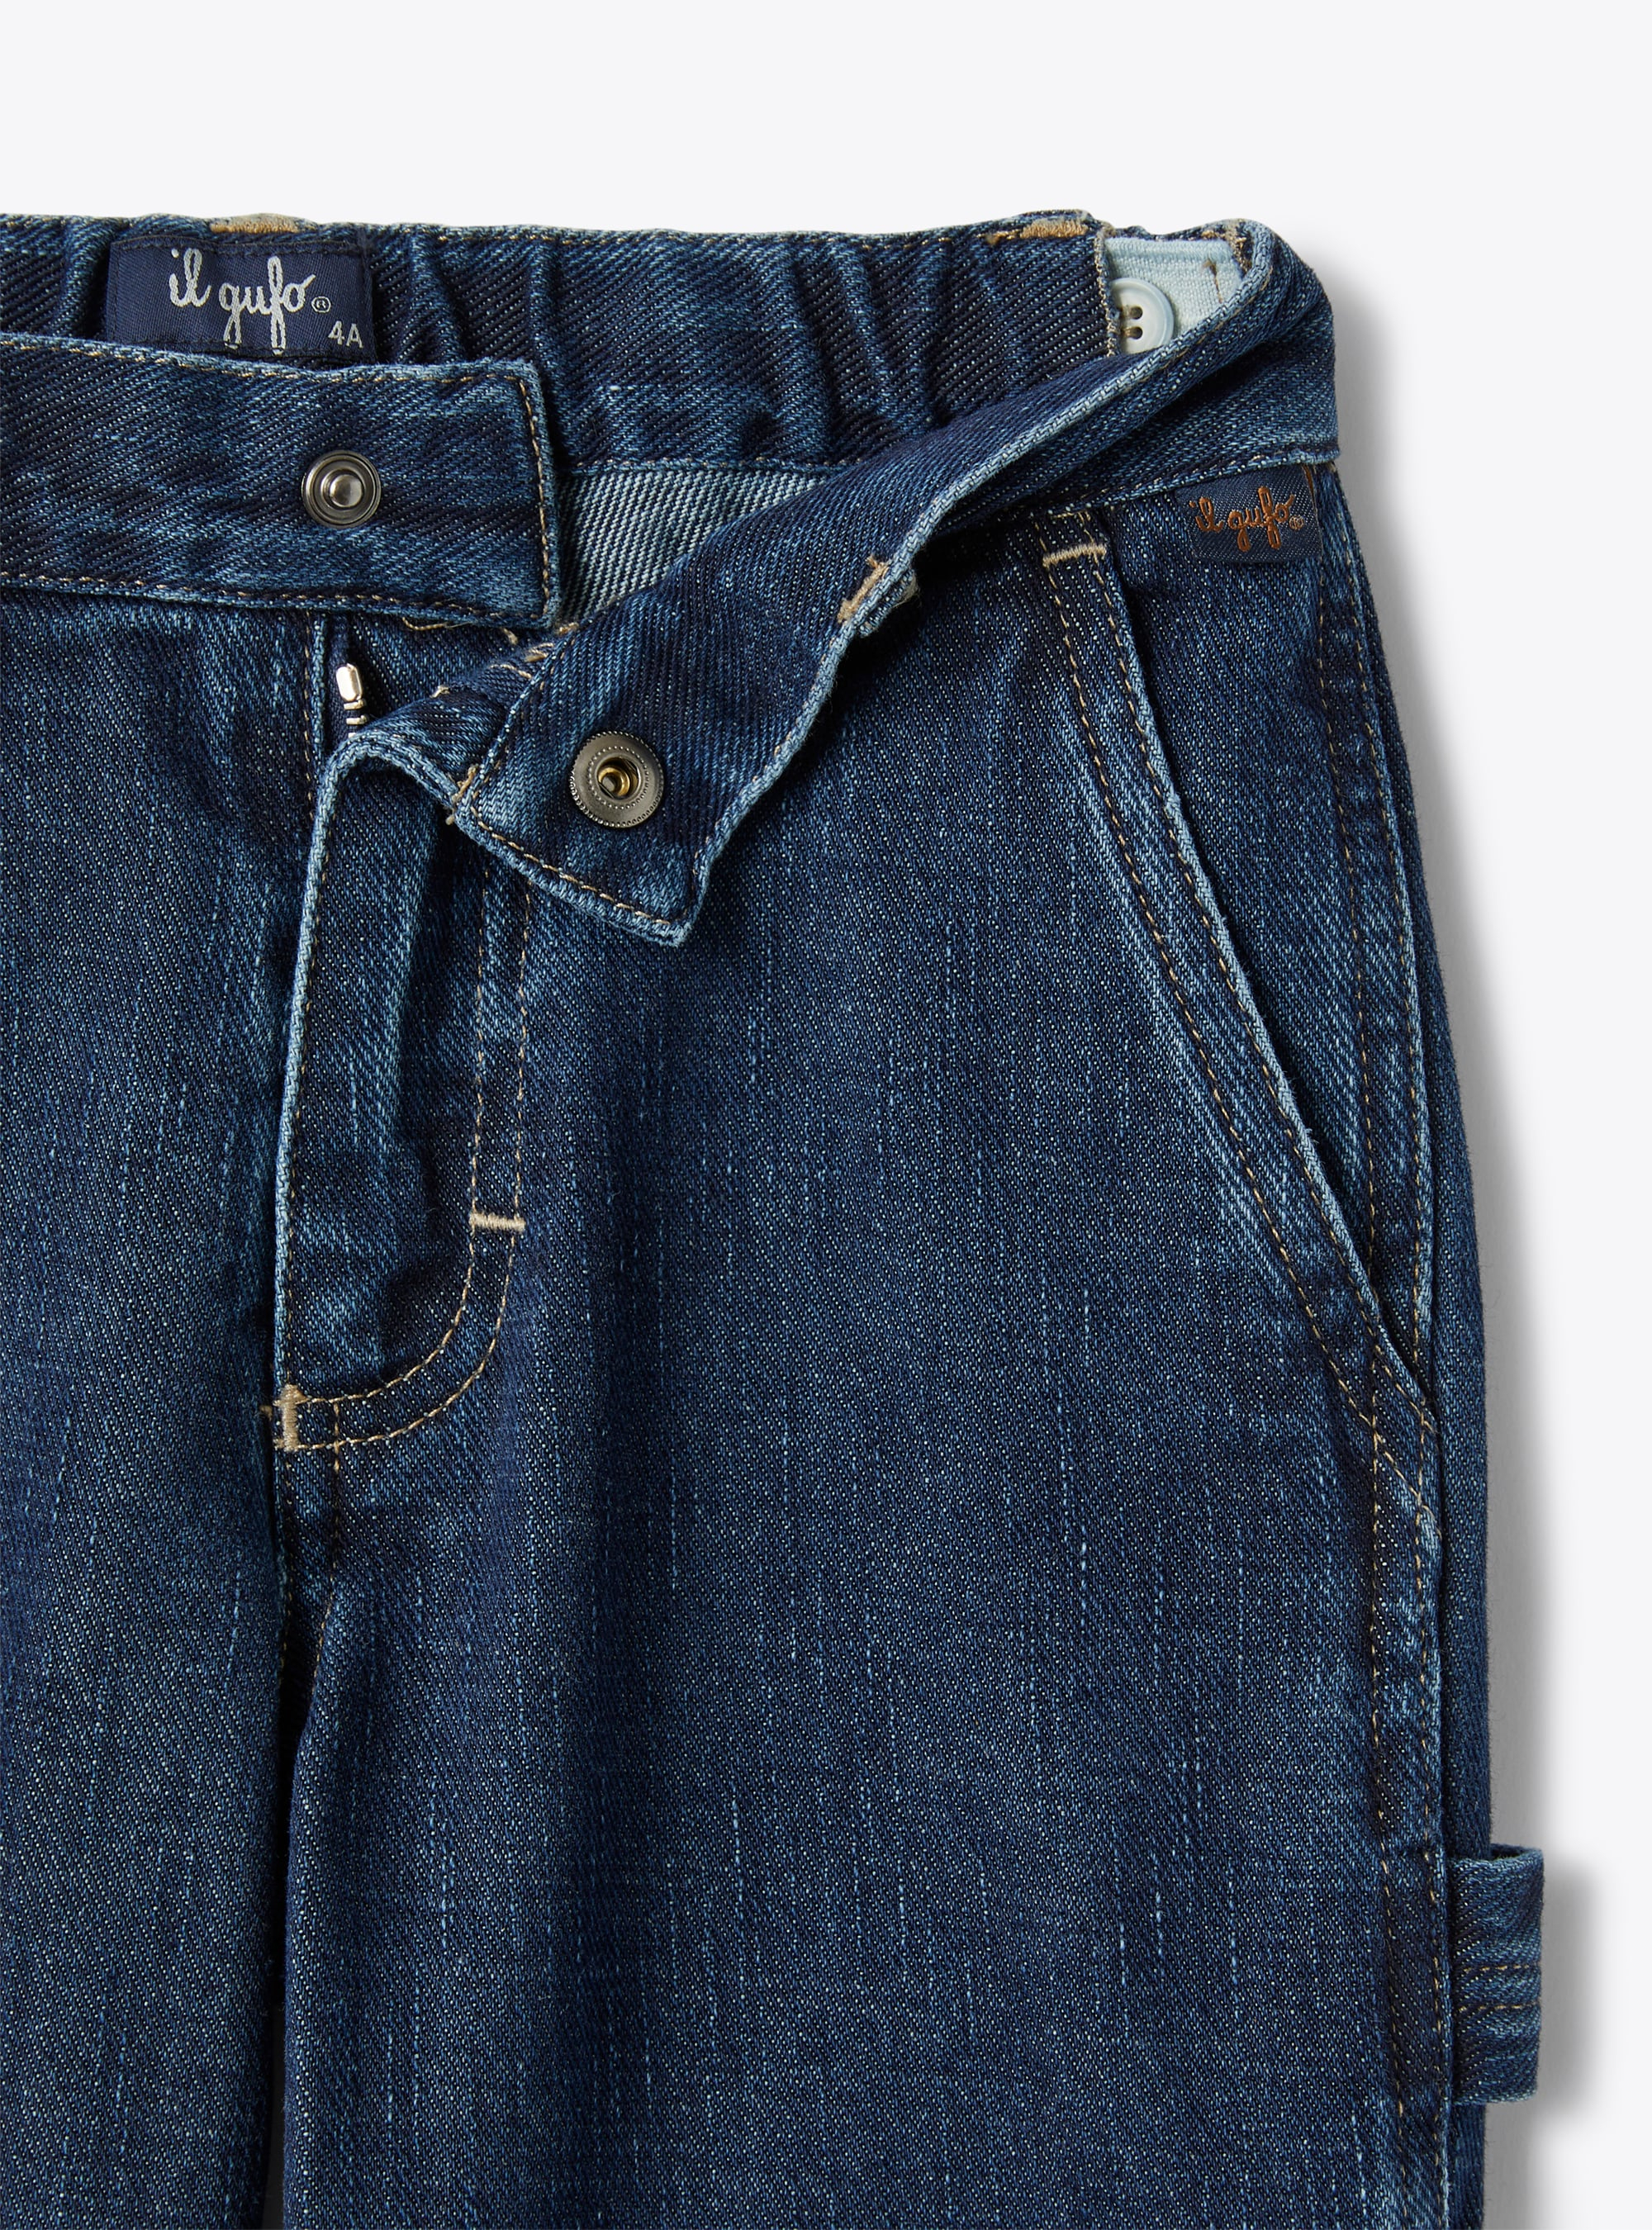 Синие брюки стандартной длины из денима - СИНИЙ | Il Gufo